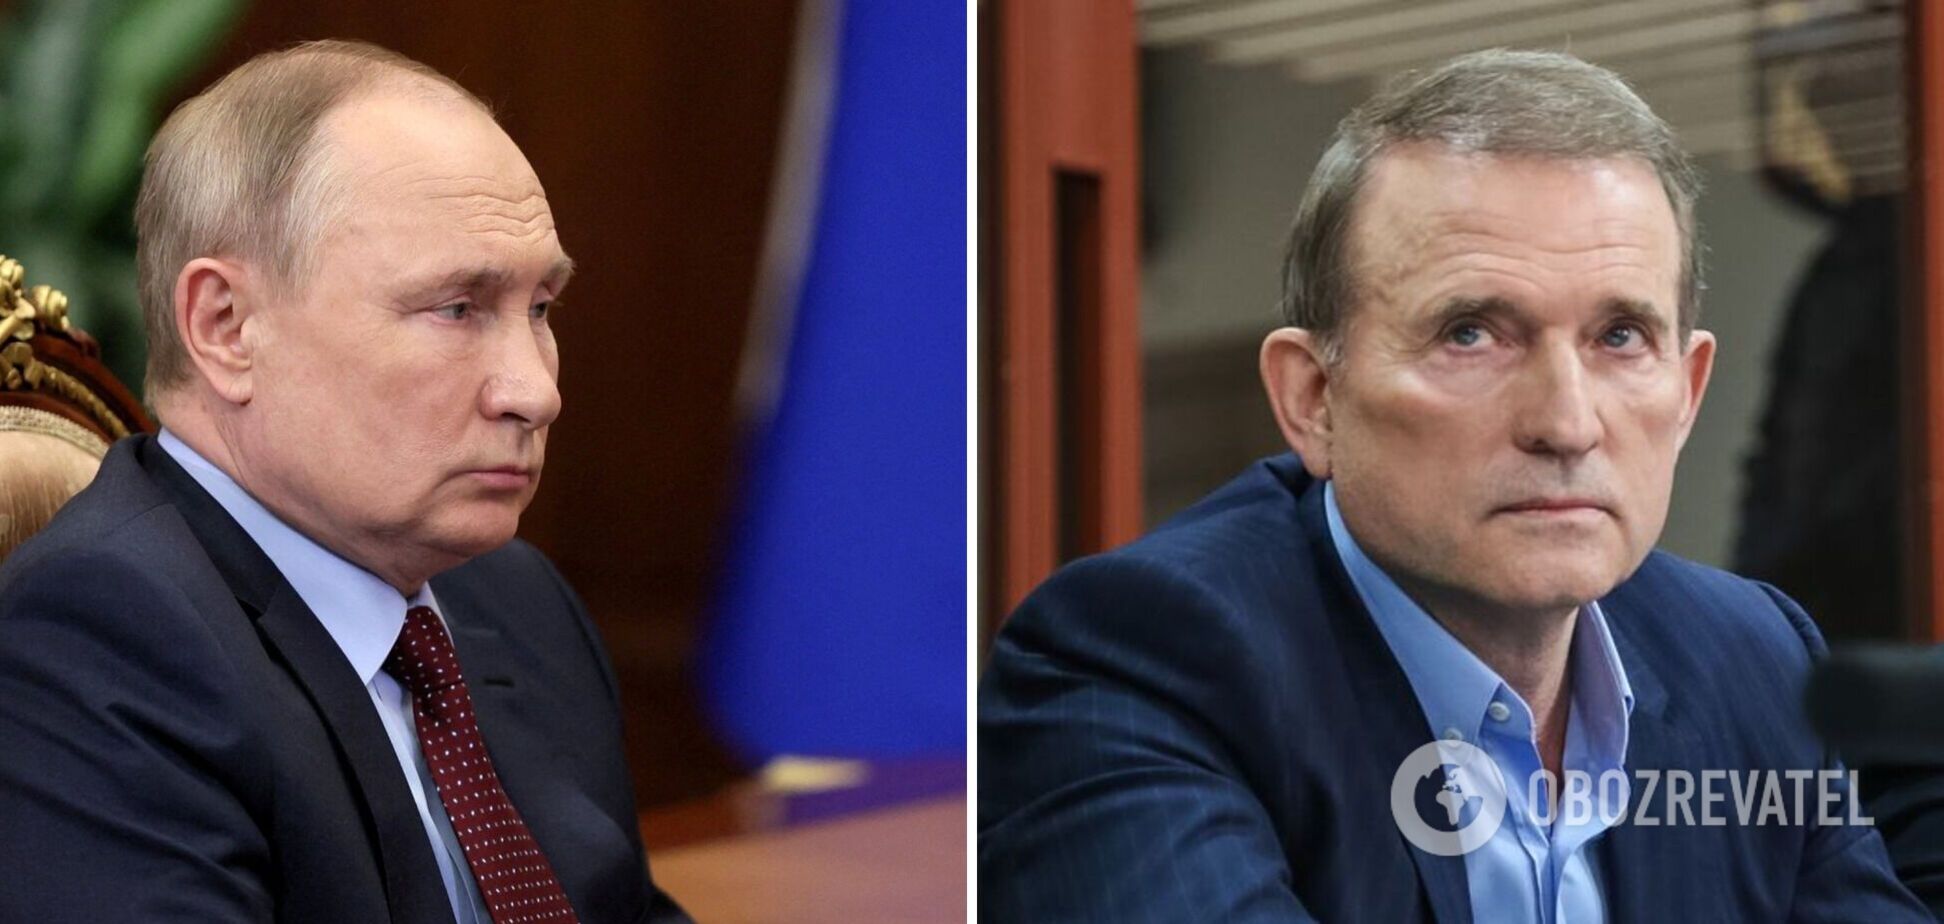 Путин расследует хищение средств на создание в Украине 'пятой колонны': вскрылась вероятная причина метаний Медведчука